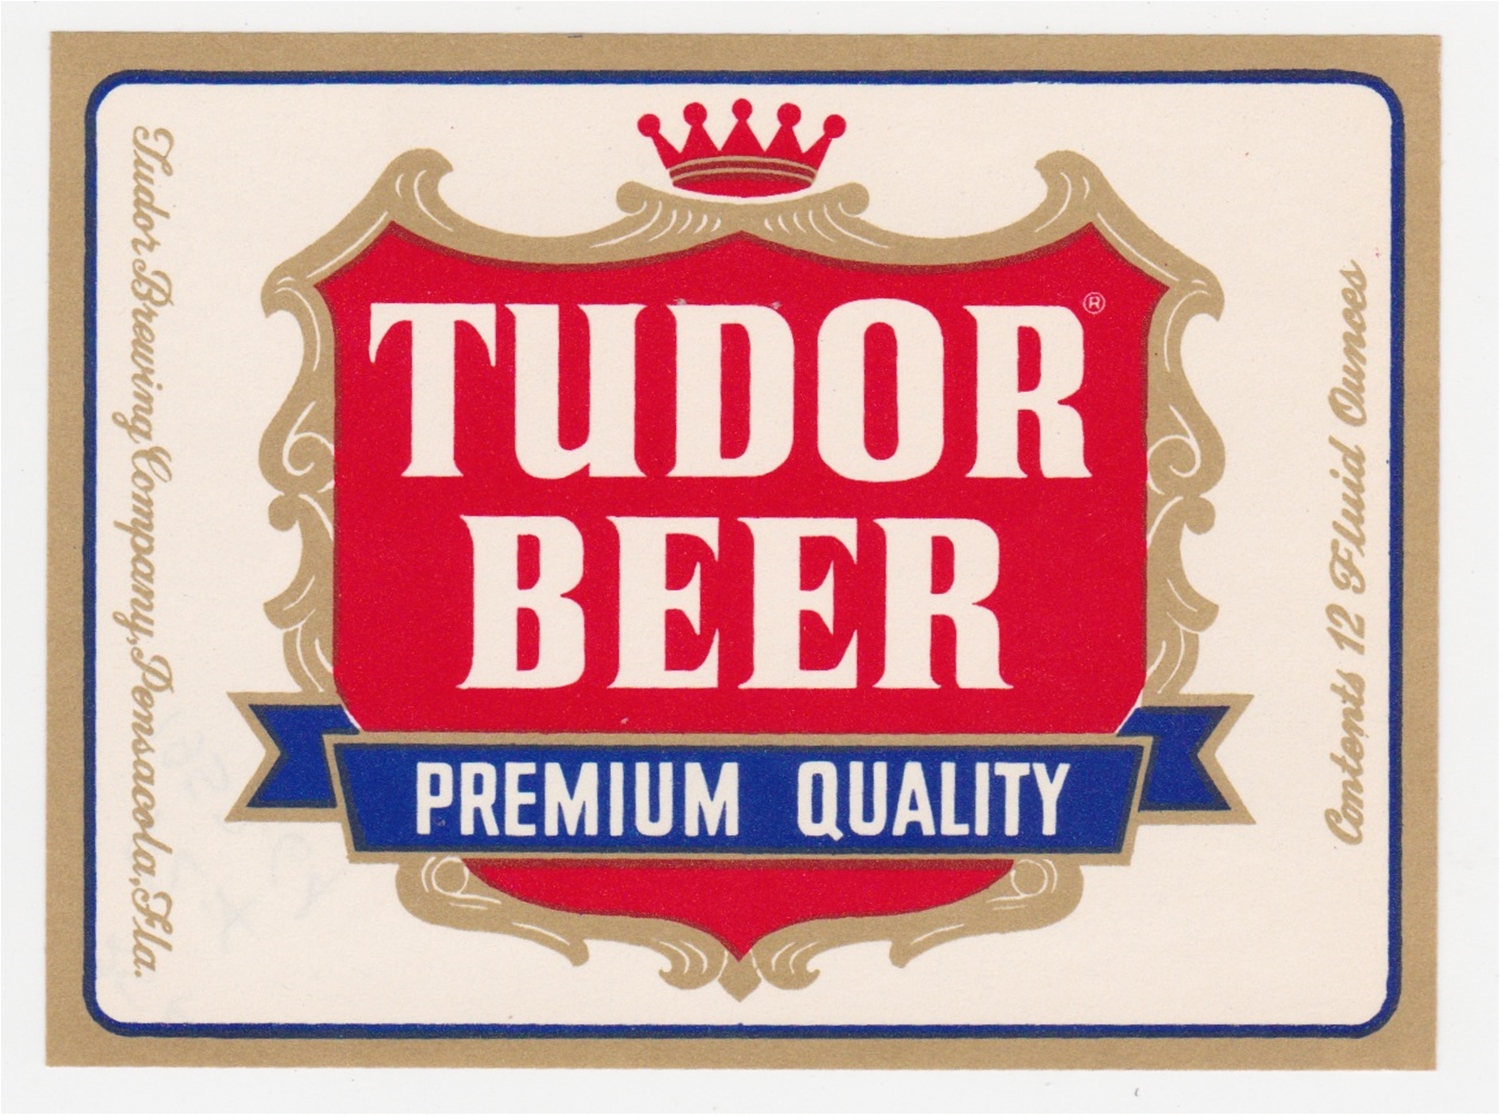 Tudor Beer Label